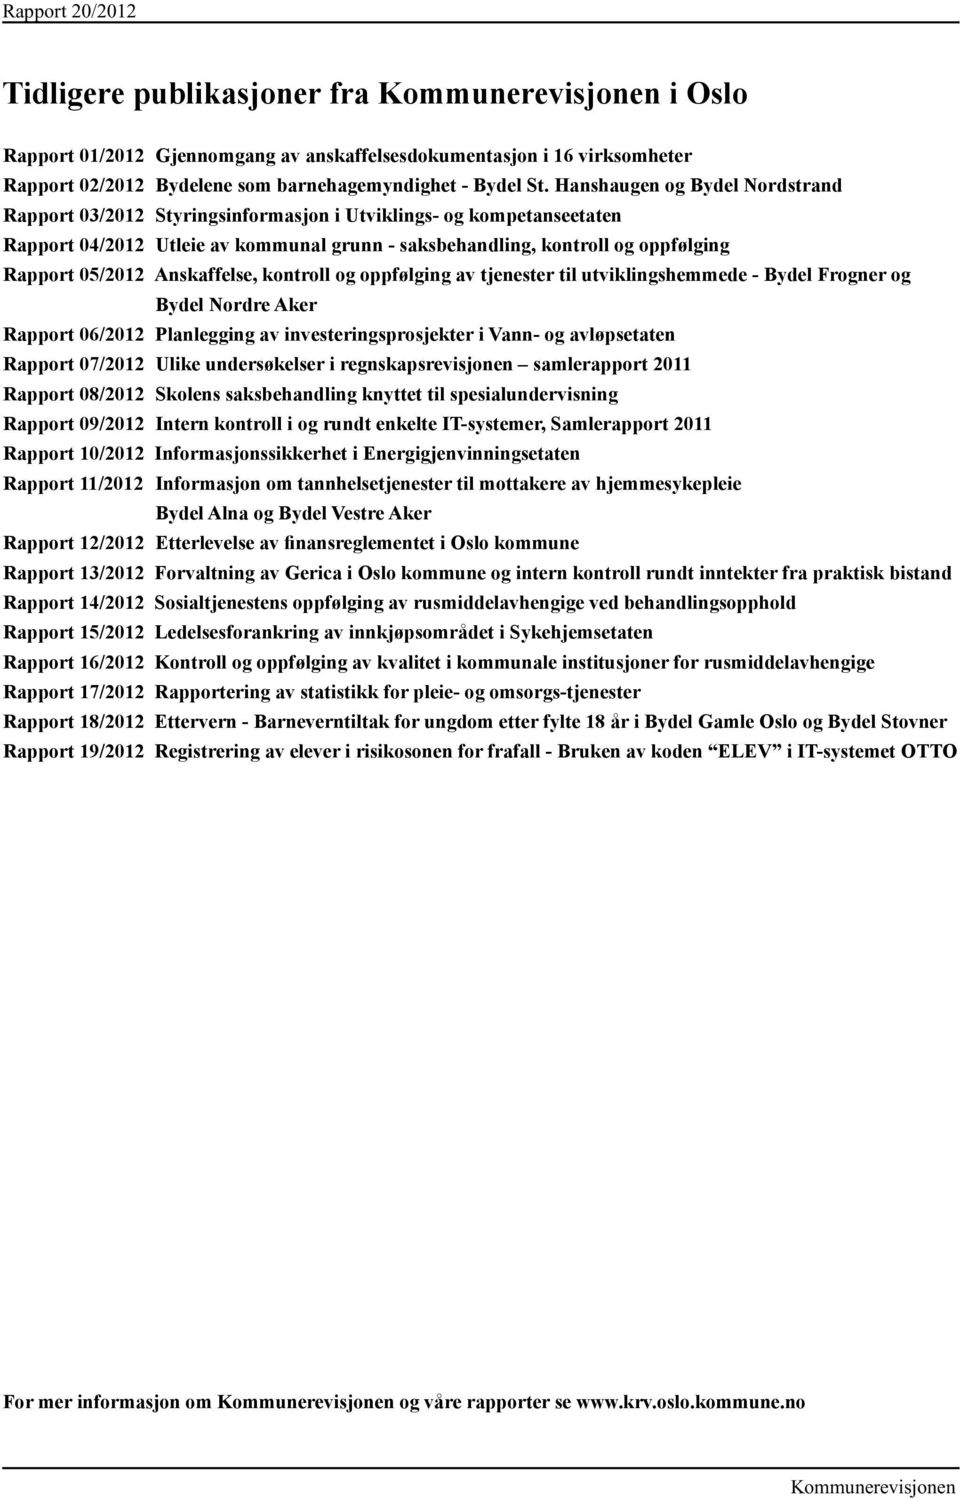 Anskaffelse, kontroll og oppfølging av tjenester til utviklingshemmede - Bydel Frogner og Bydel Nordre Aker Rapport 06/2012 Planlegging av investeringsprosjekter i Vann- og avløpsetaten Rapport